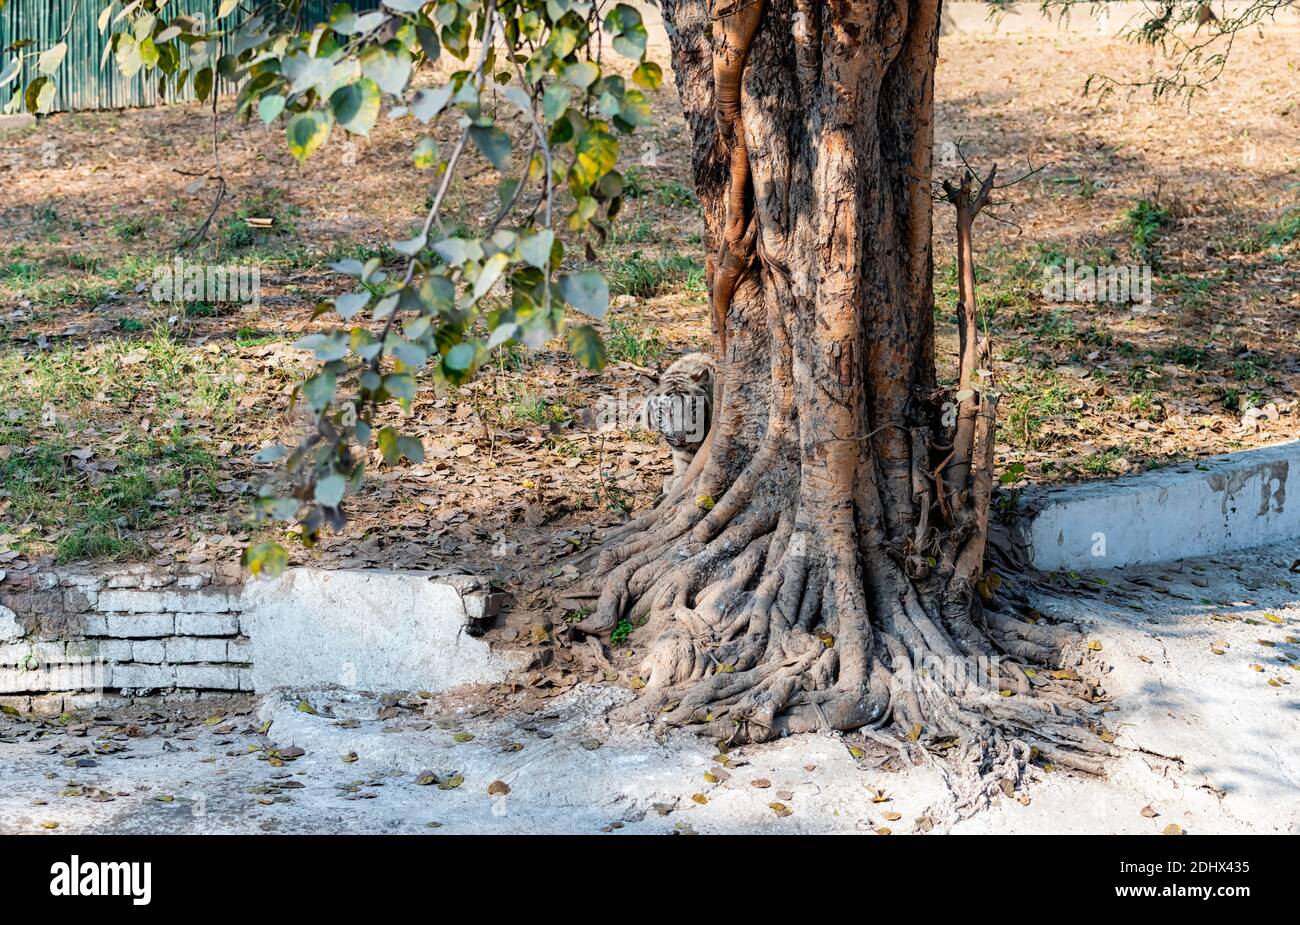 Ein weißes Tigerjunges, das sich hinter einem Baum im Tigergehege im National Zoological Park Delhi versteckt, auch bekannt als Delhi Zoo. Stockfoto